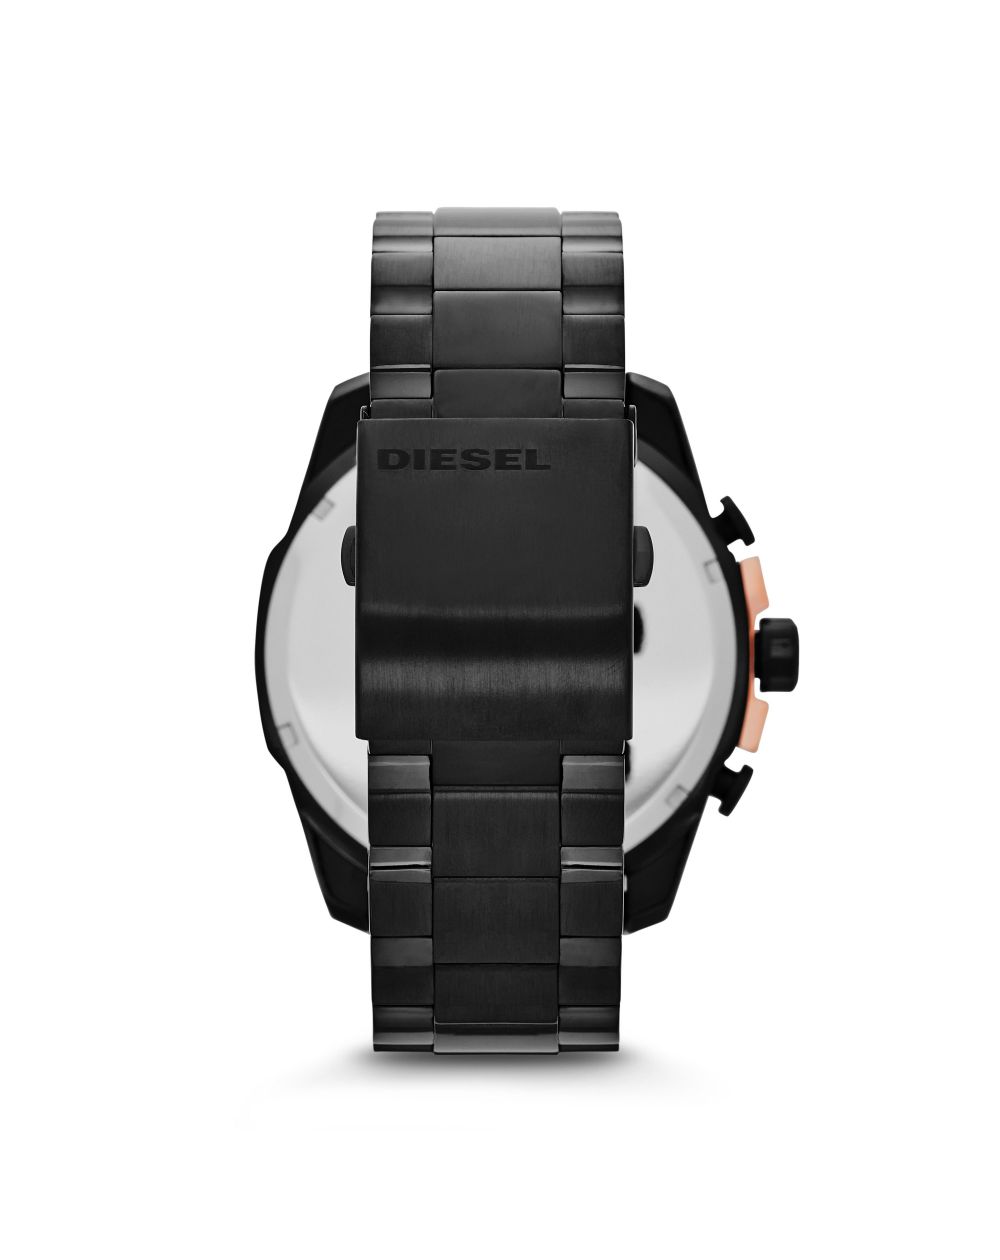 Diesel - Diesel watch DZ4309 MEGA CHIEF